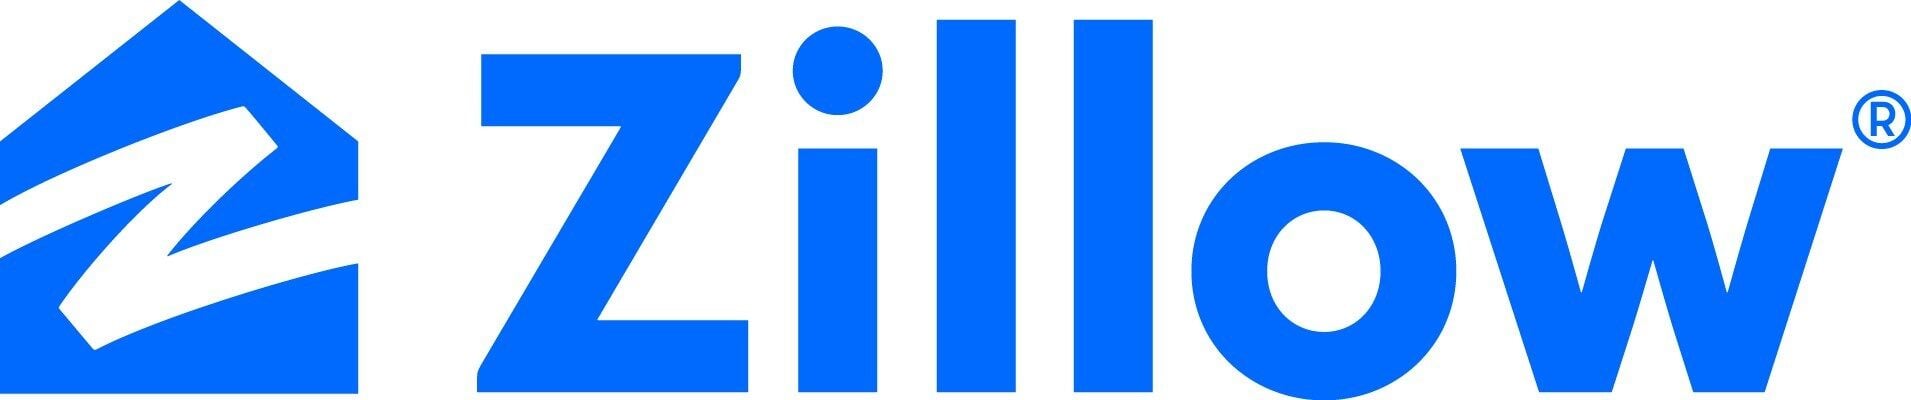 Zillow logo (PRNewsfoto/Zillow Group)